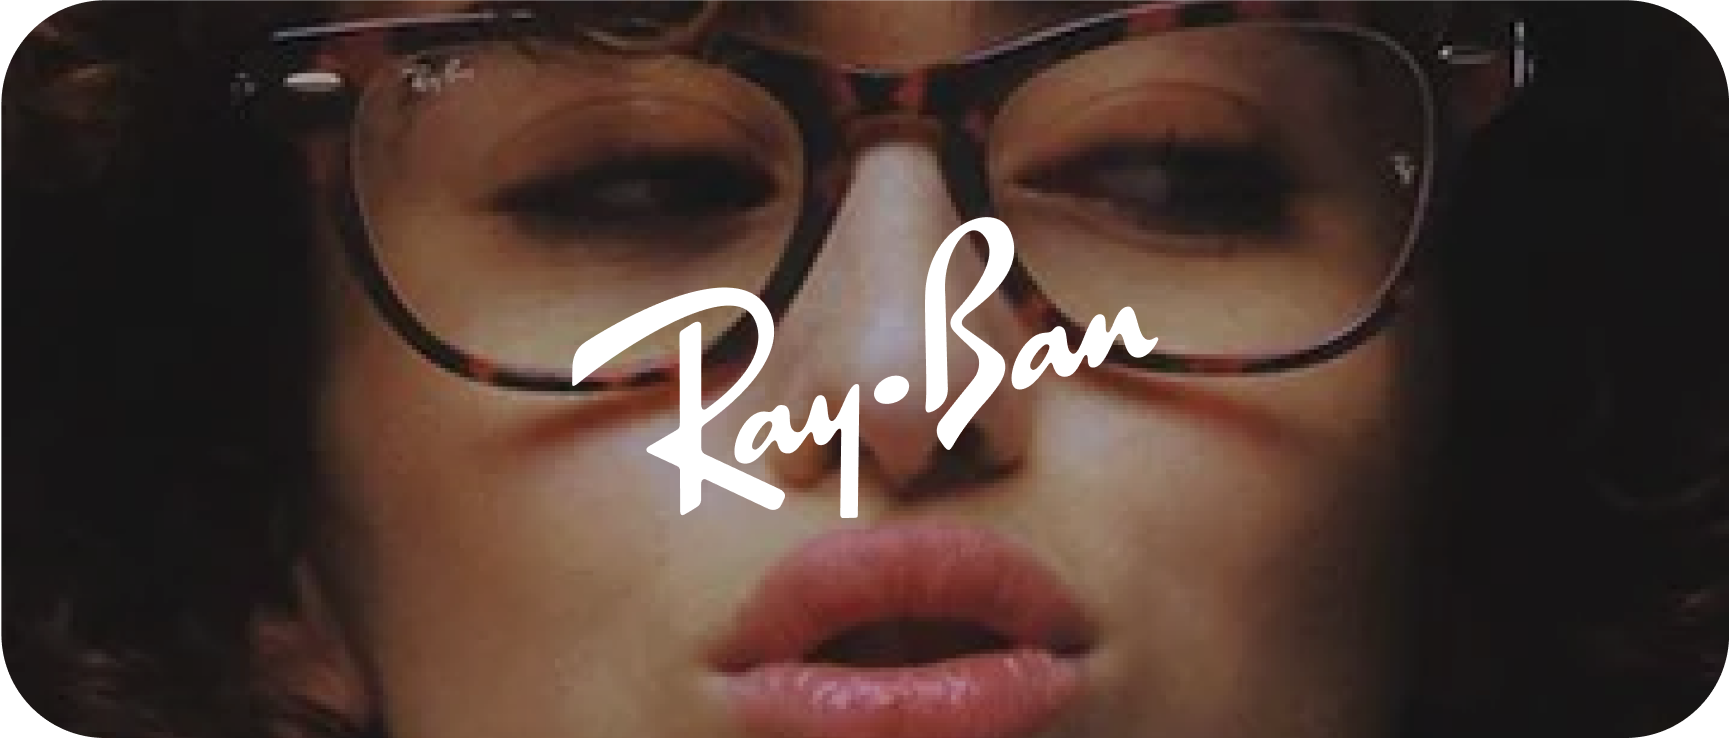 Ray-Ban Image